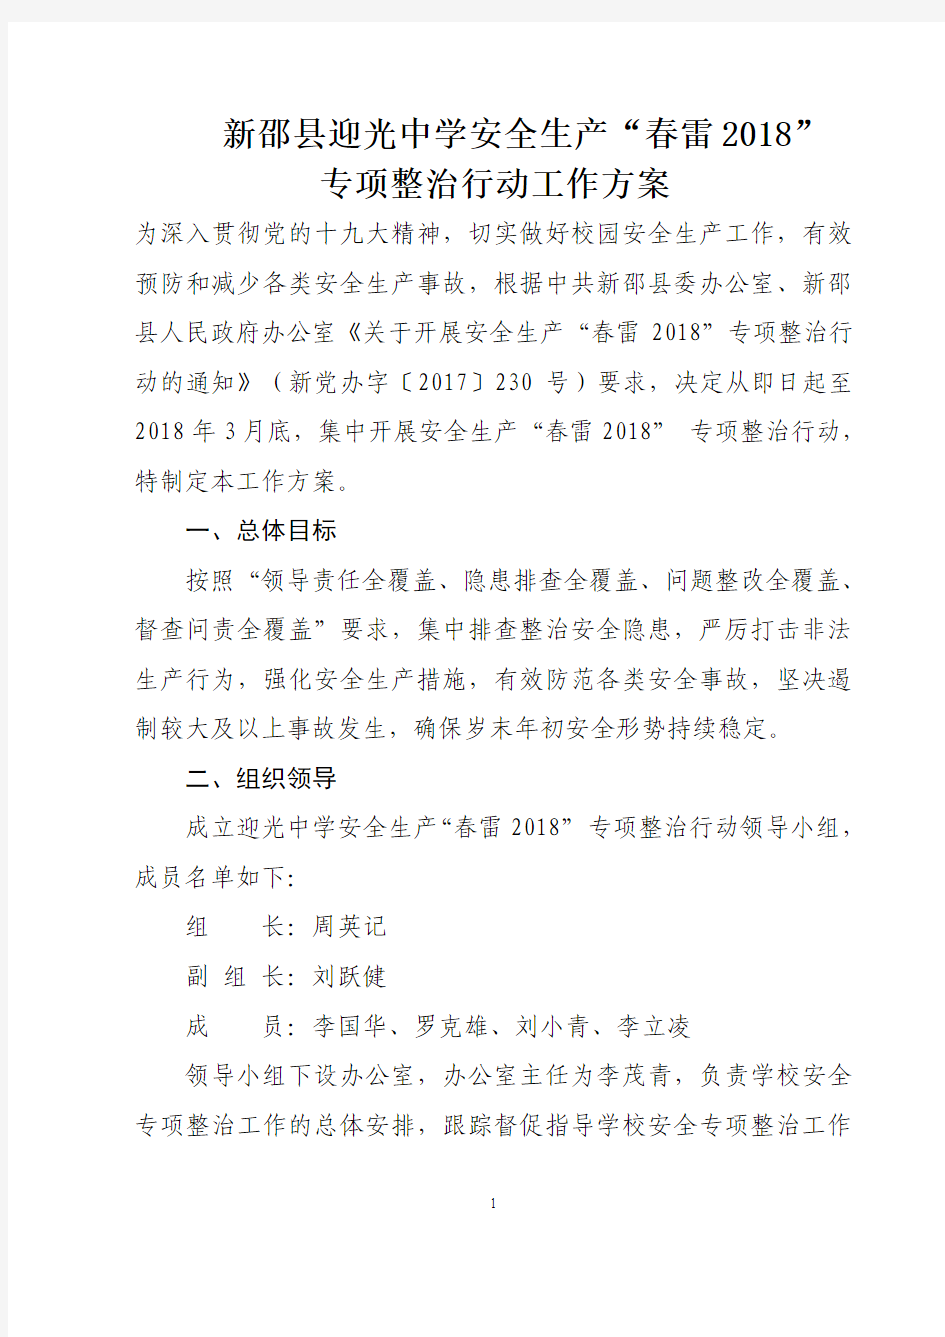 新邵县迎光中学安全生产“春雷2018” 专项整治行动工作方案